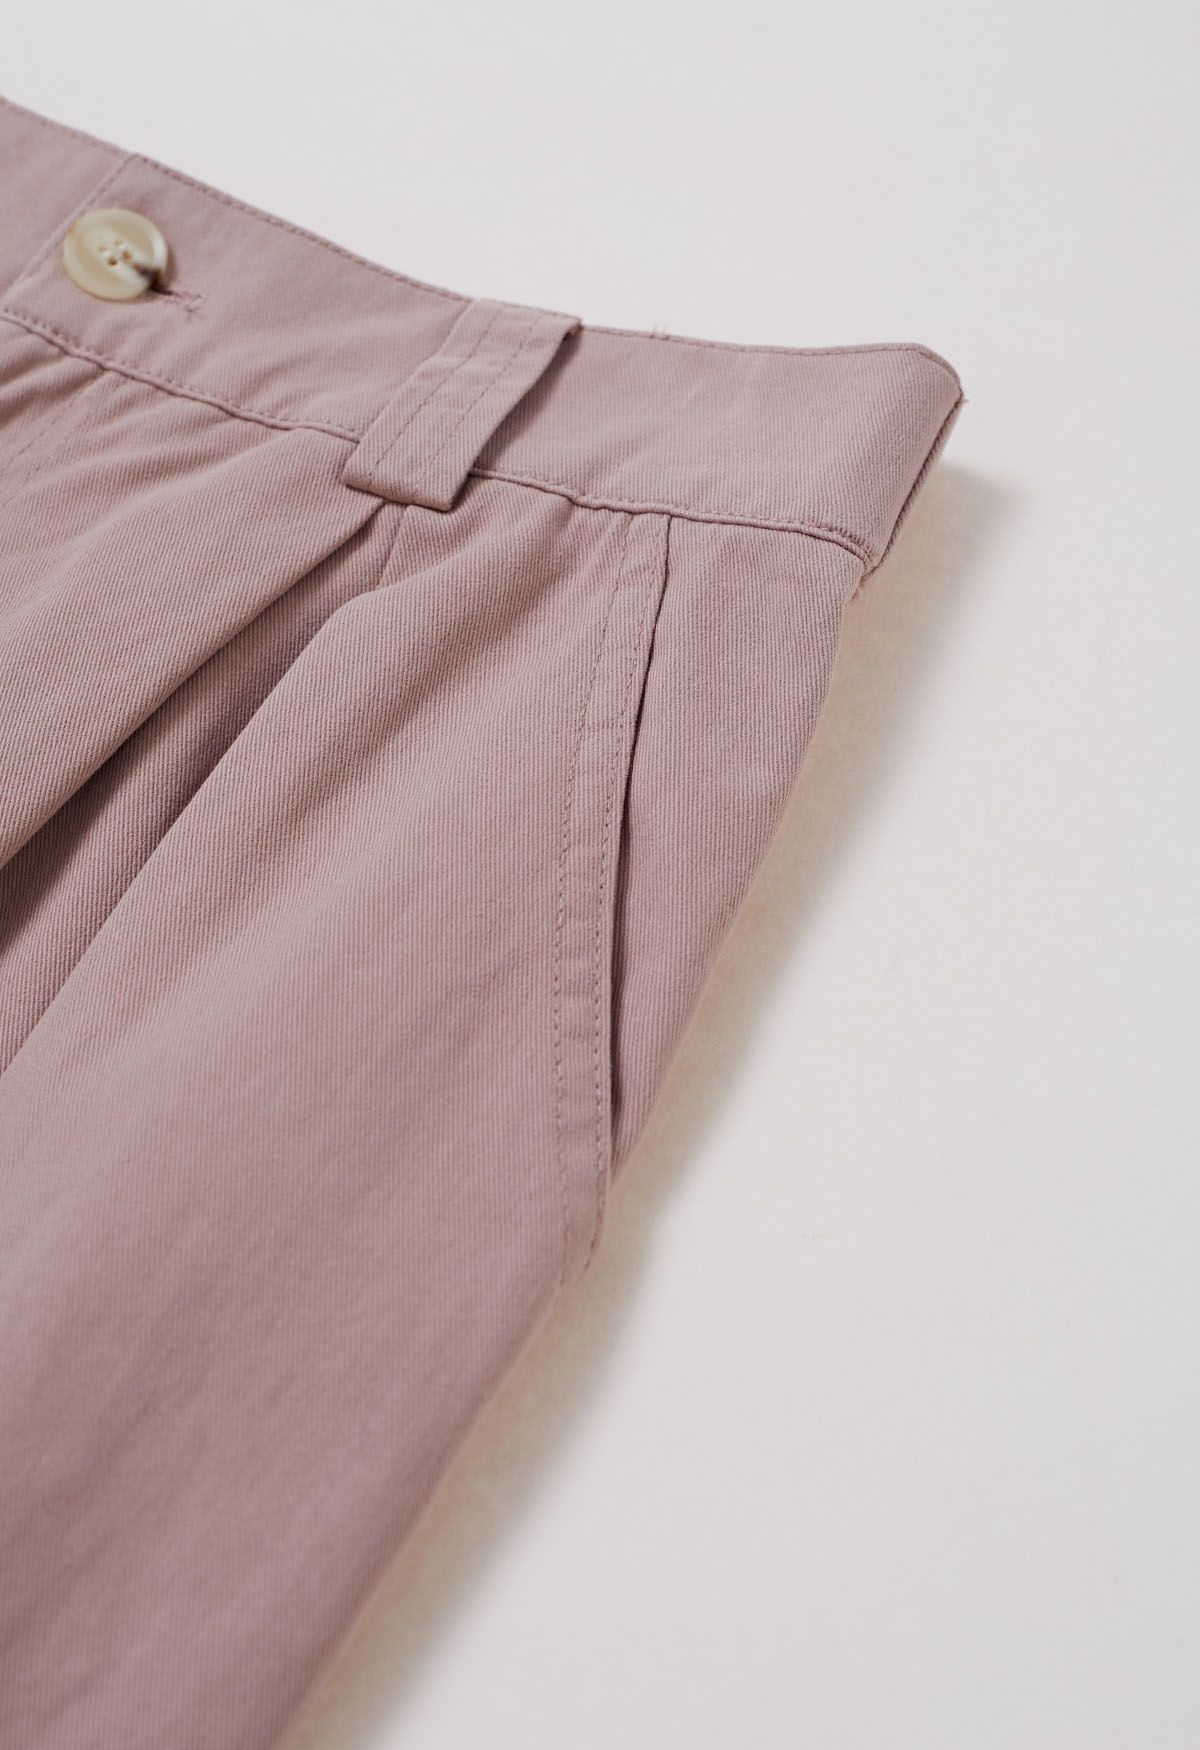 Pantalones anchos de algodón suave en rosa